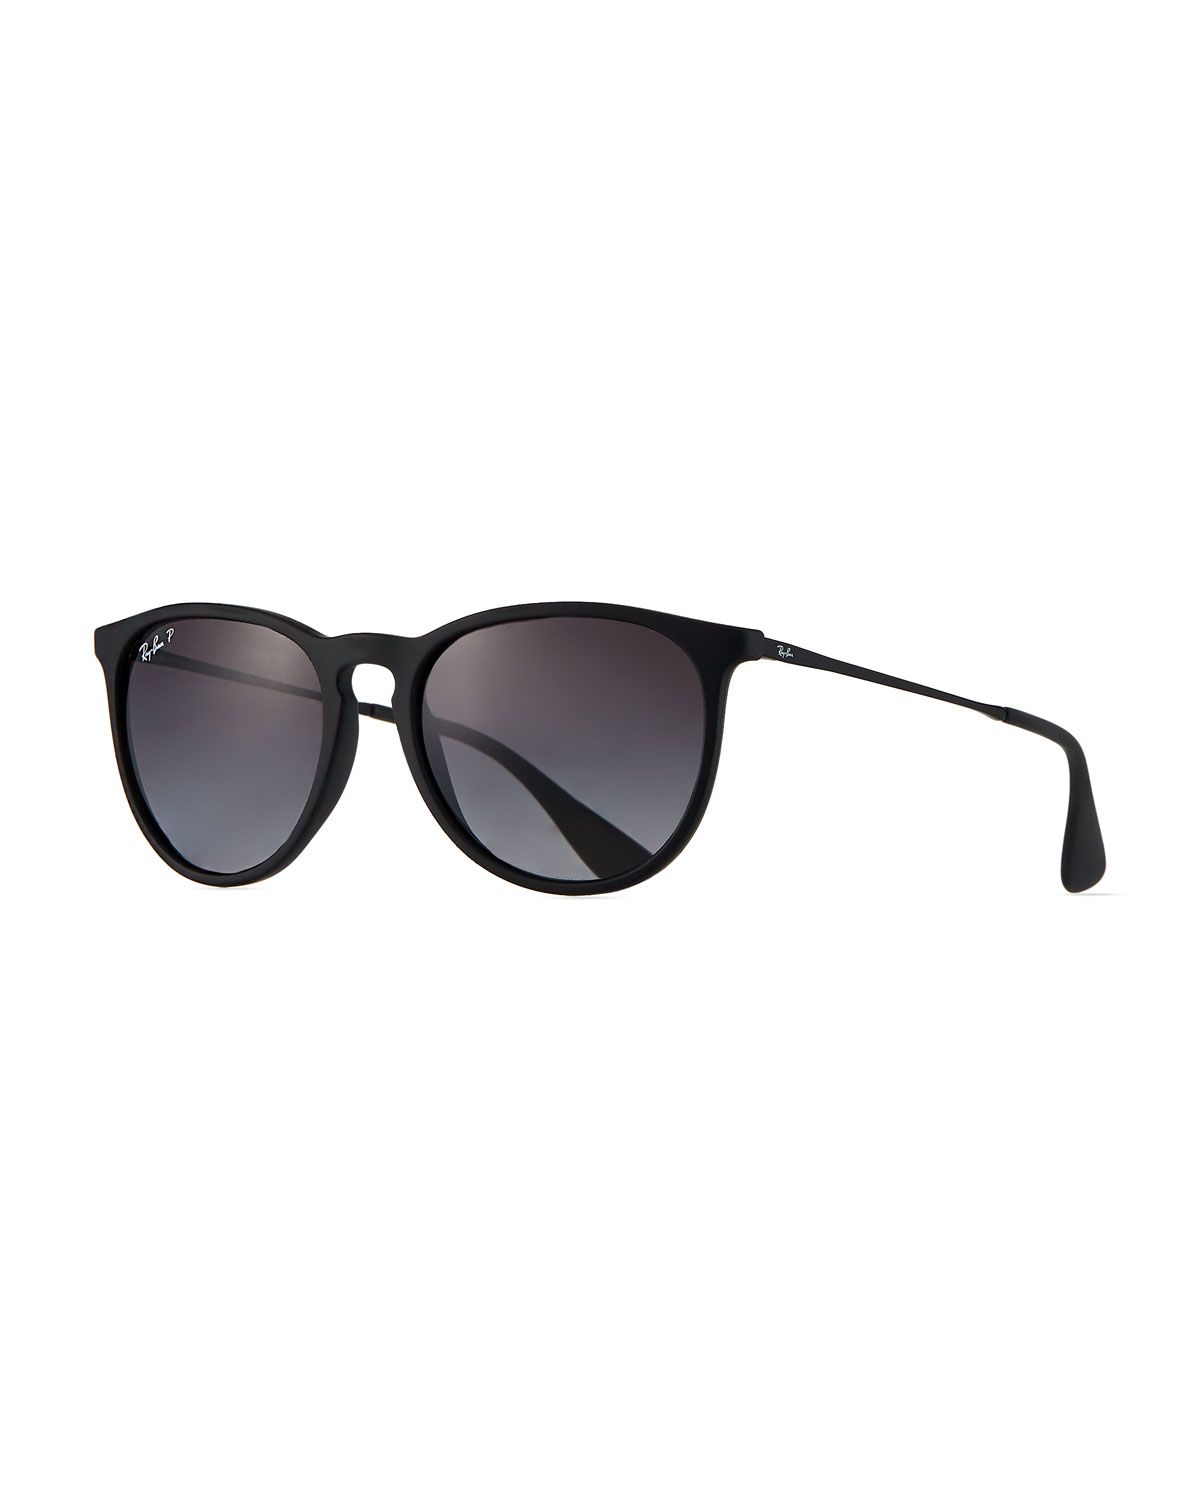 Men's Round Metal Sunglasses | Neiman Marcus